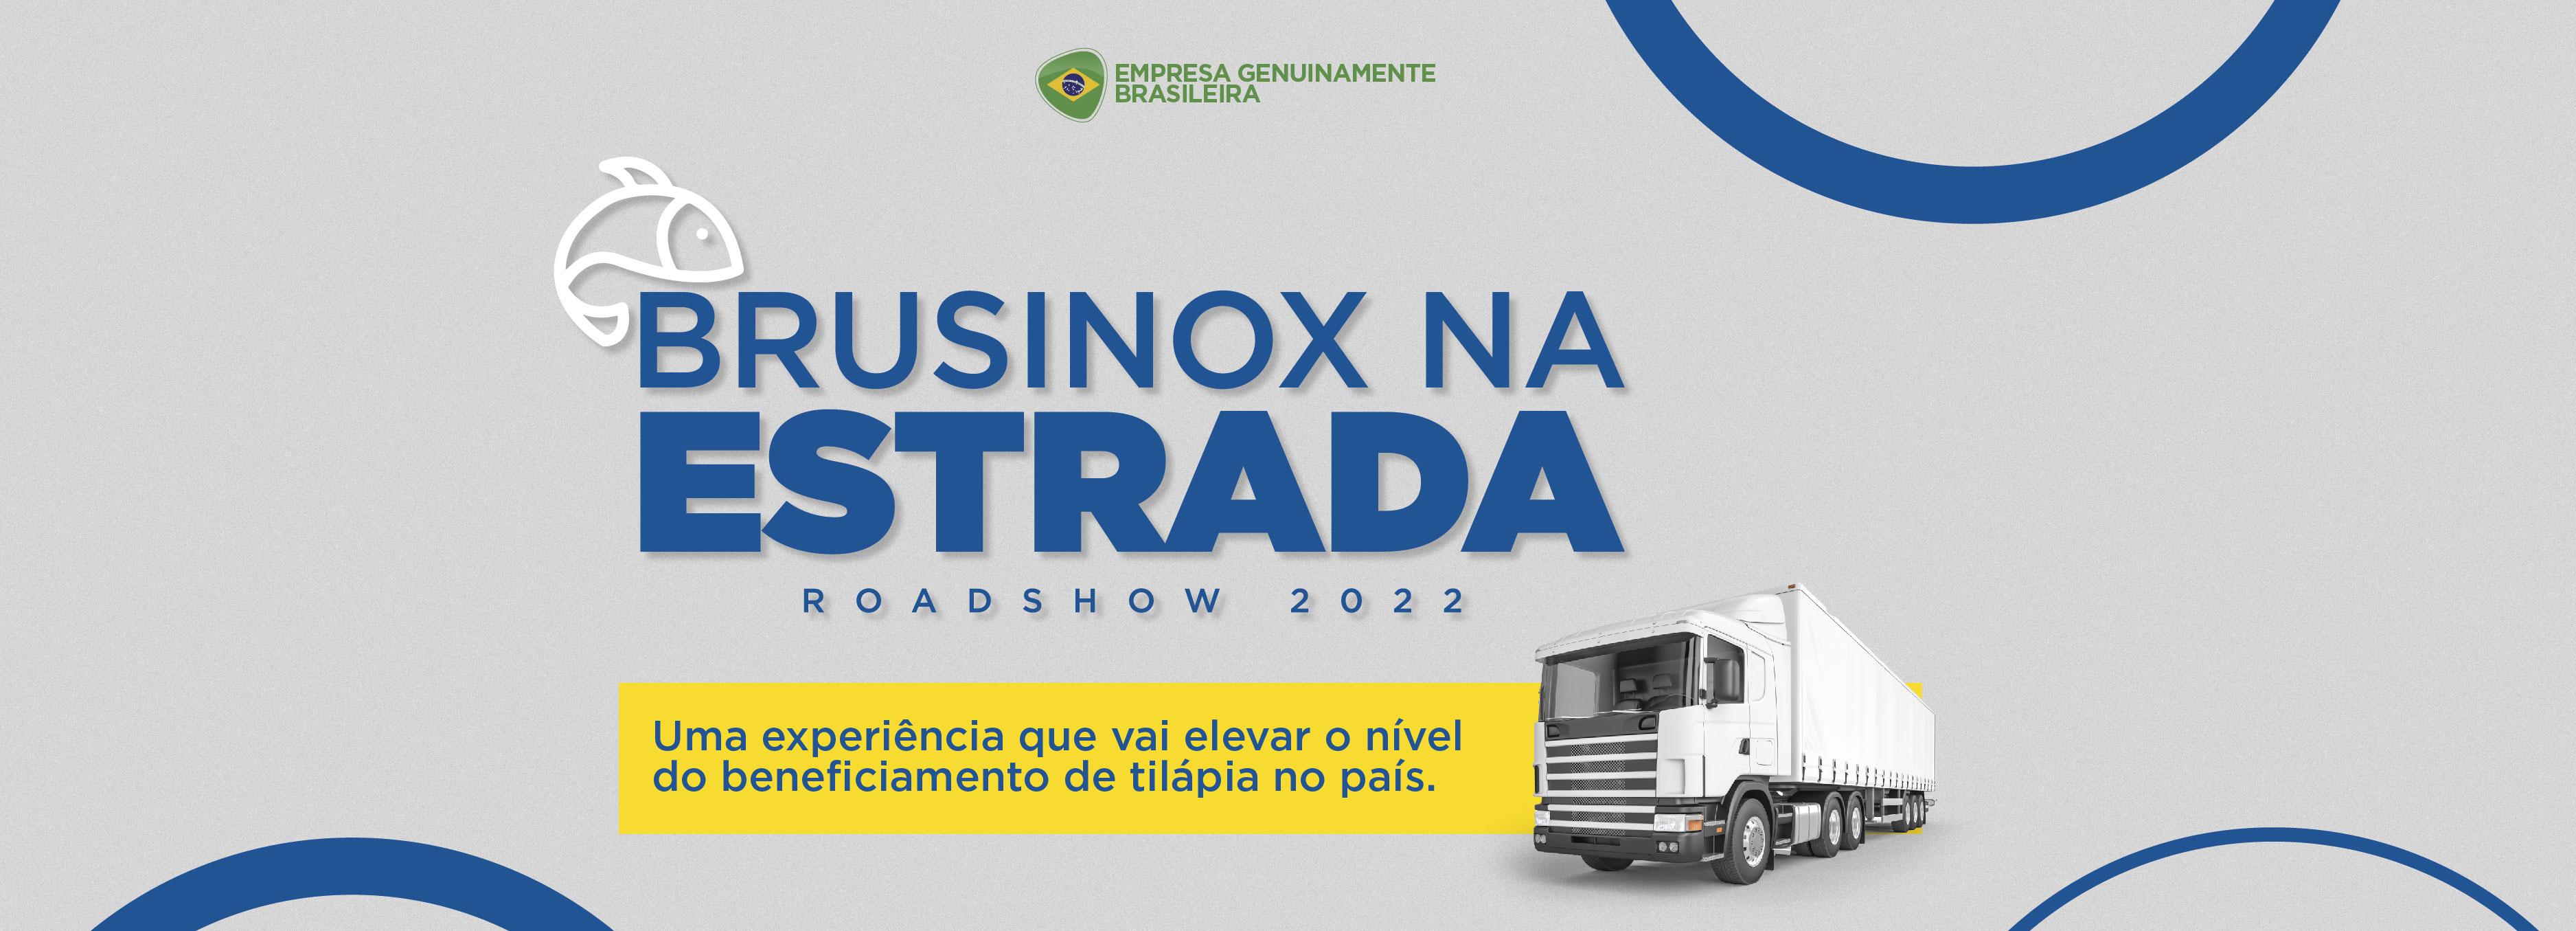 Brusinox na Estrada - Roadshow 2022